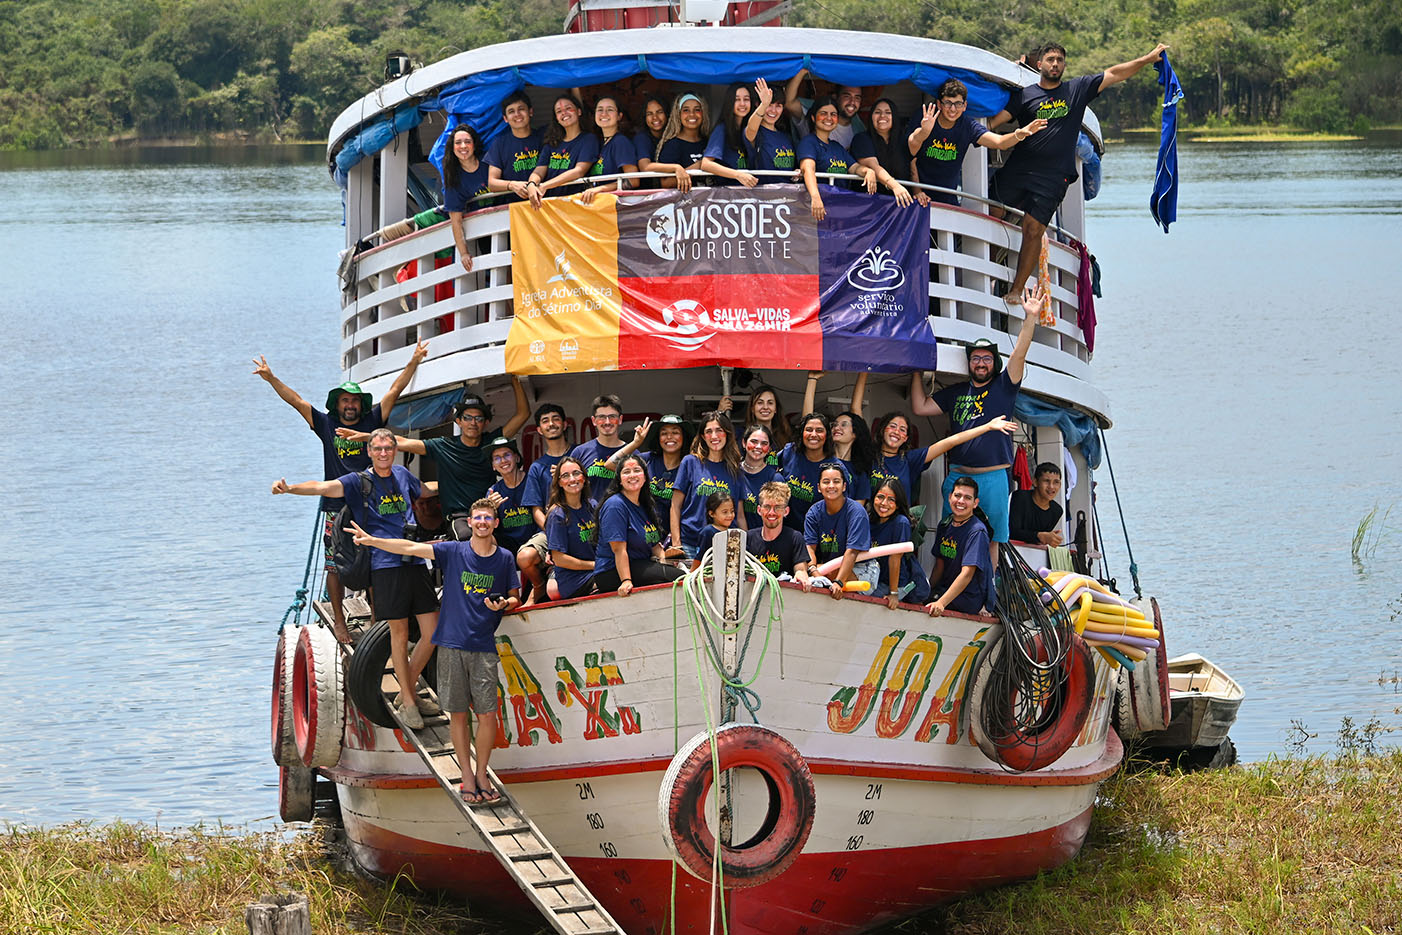 Alumnos de la Universidad Adventista del Plata participaron de un viaje misionero en el Amazonas